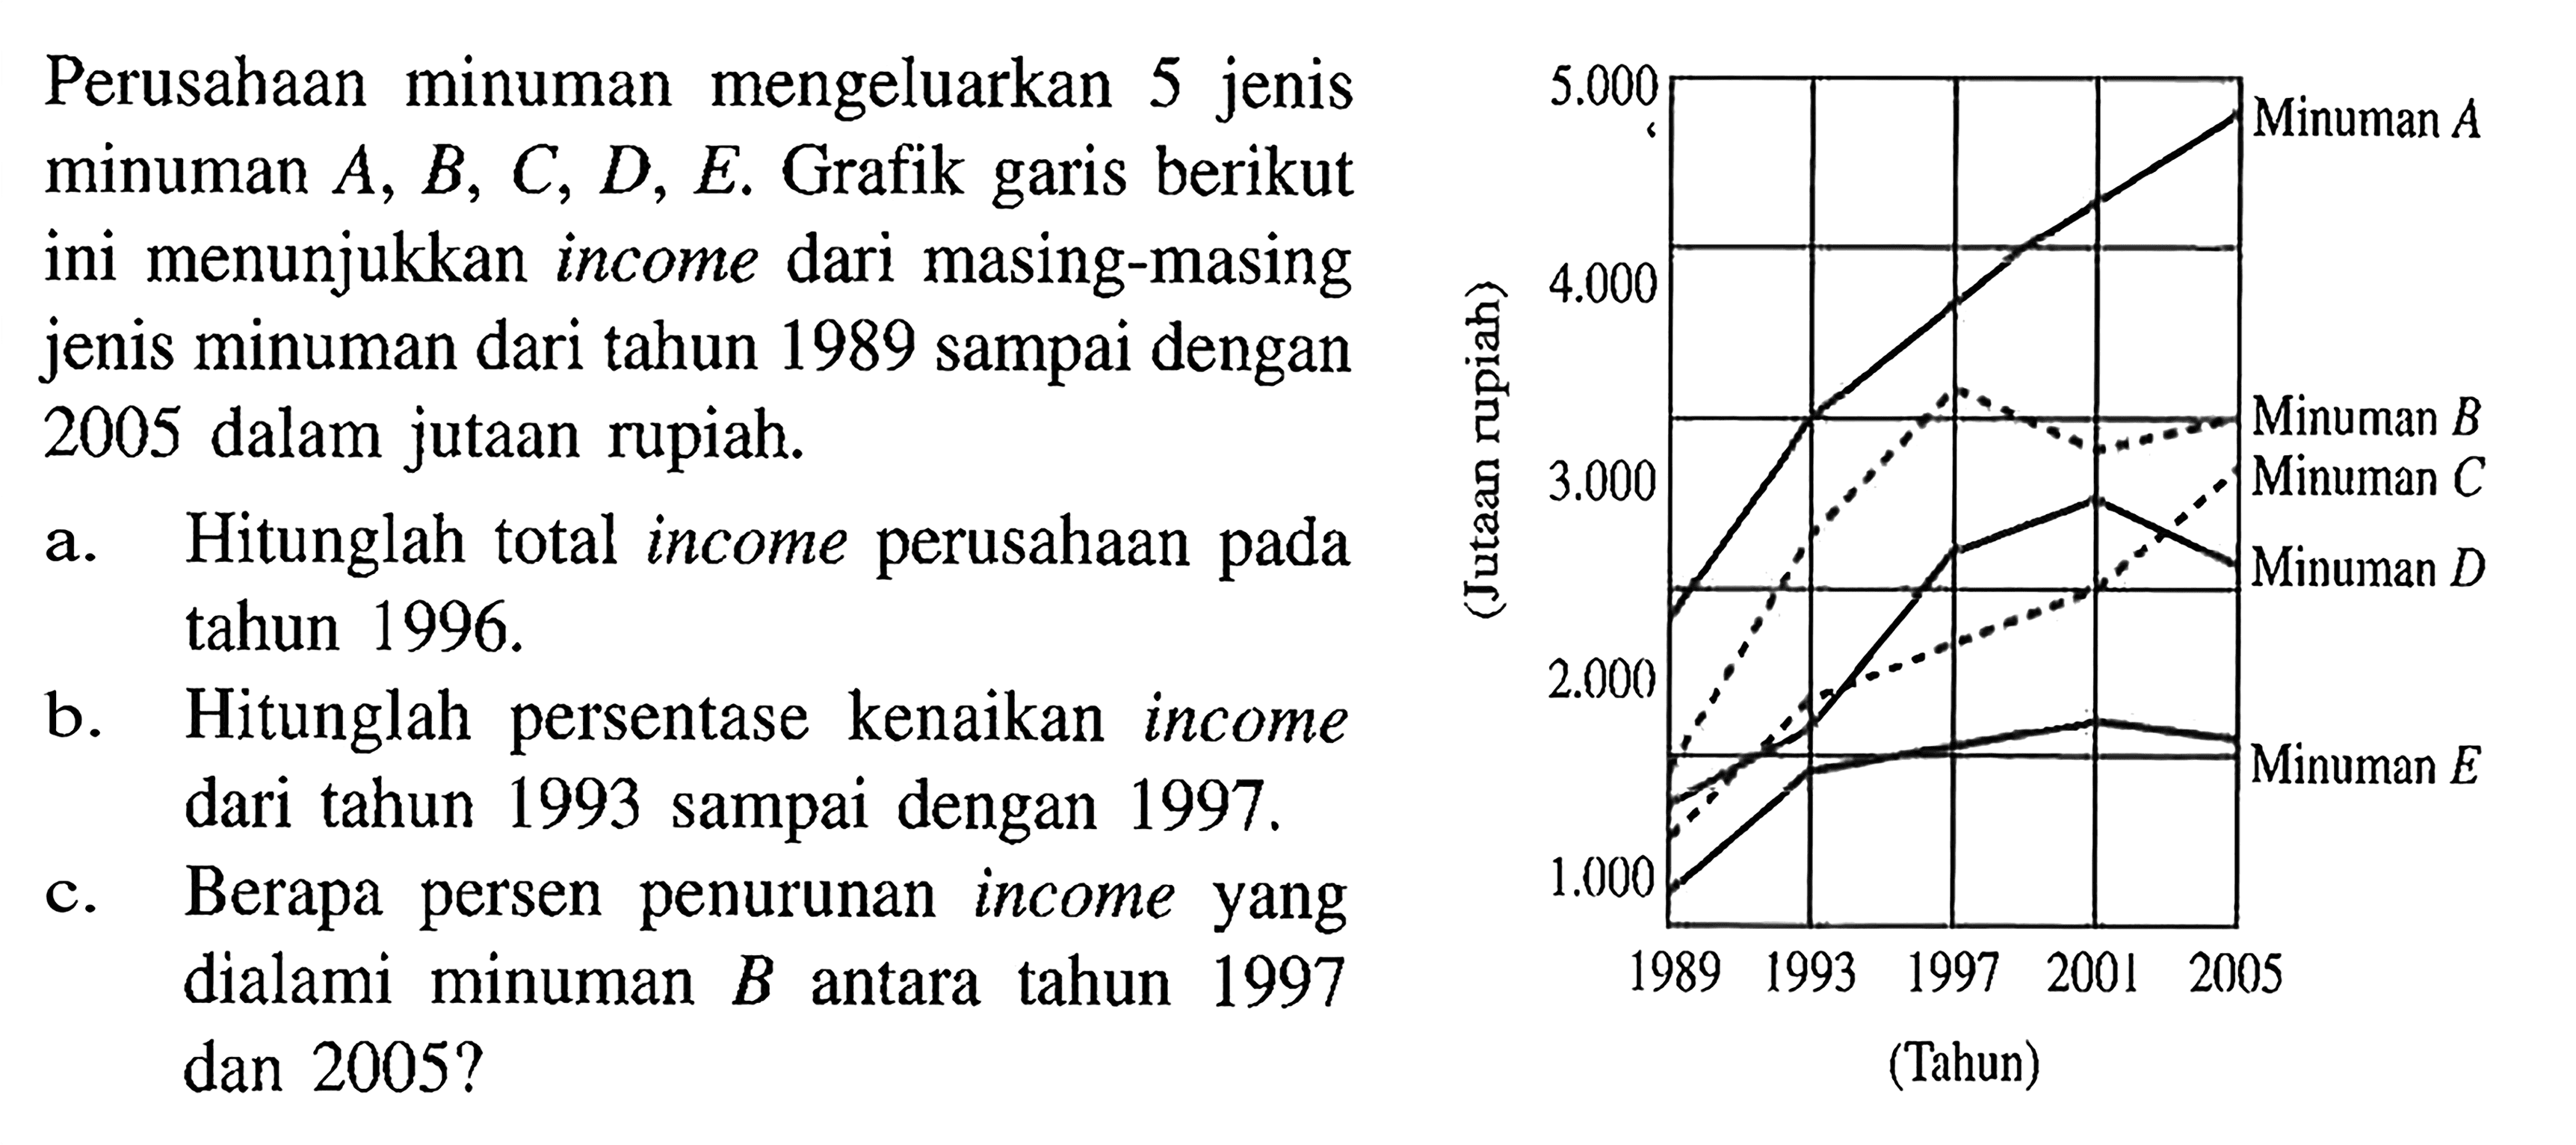 Perusahaan minuman mengeluarkan 5 jenis minuman A, B, C, D, E. Grafik garis berikut ini menunjukkan income dari masing-masing jenis minuman dari tahun 1989 sampai dengan 2005 dalam jutaan rupiah. a. Hitunglah total income perusahaan pada tahun 1996. b. Hitunglah persentase kenaikan income dari tahun 1993 sampai dengan 1997. c. Berapa persen penurunan income yang dialami minuman B antara tahun 1997 dan 2005?